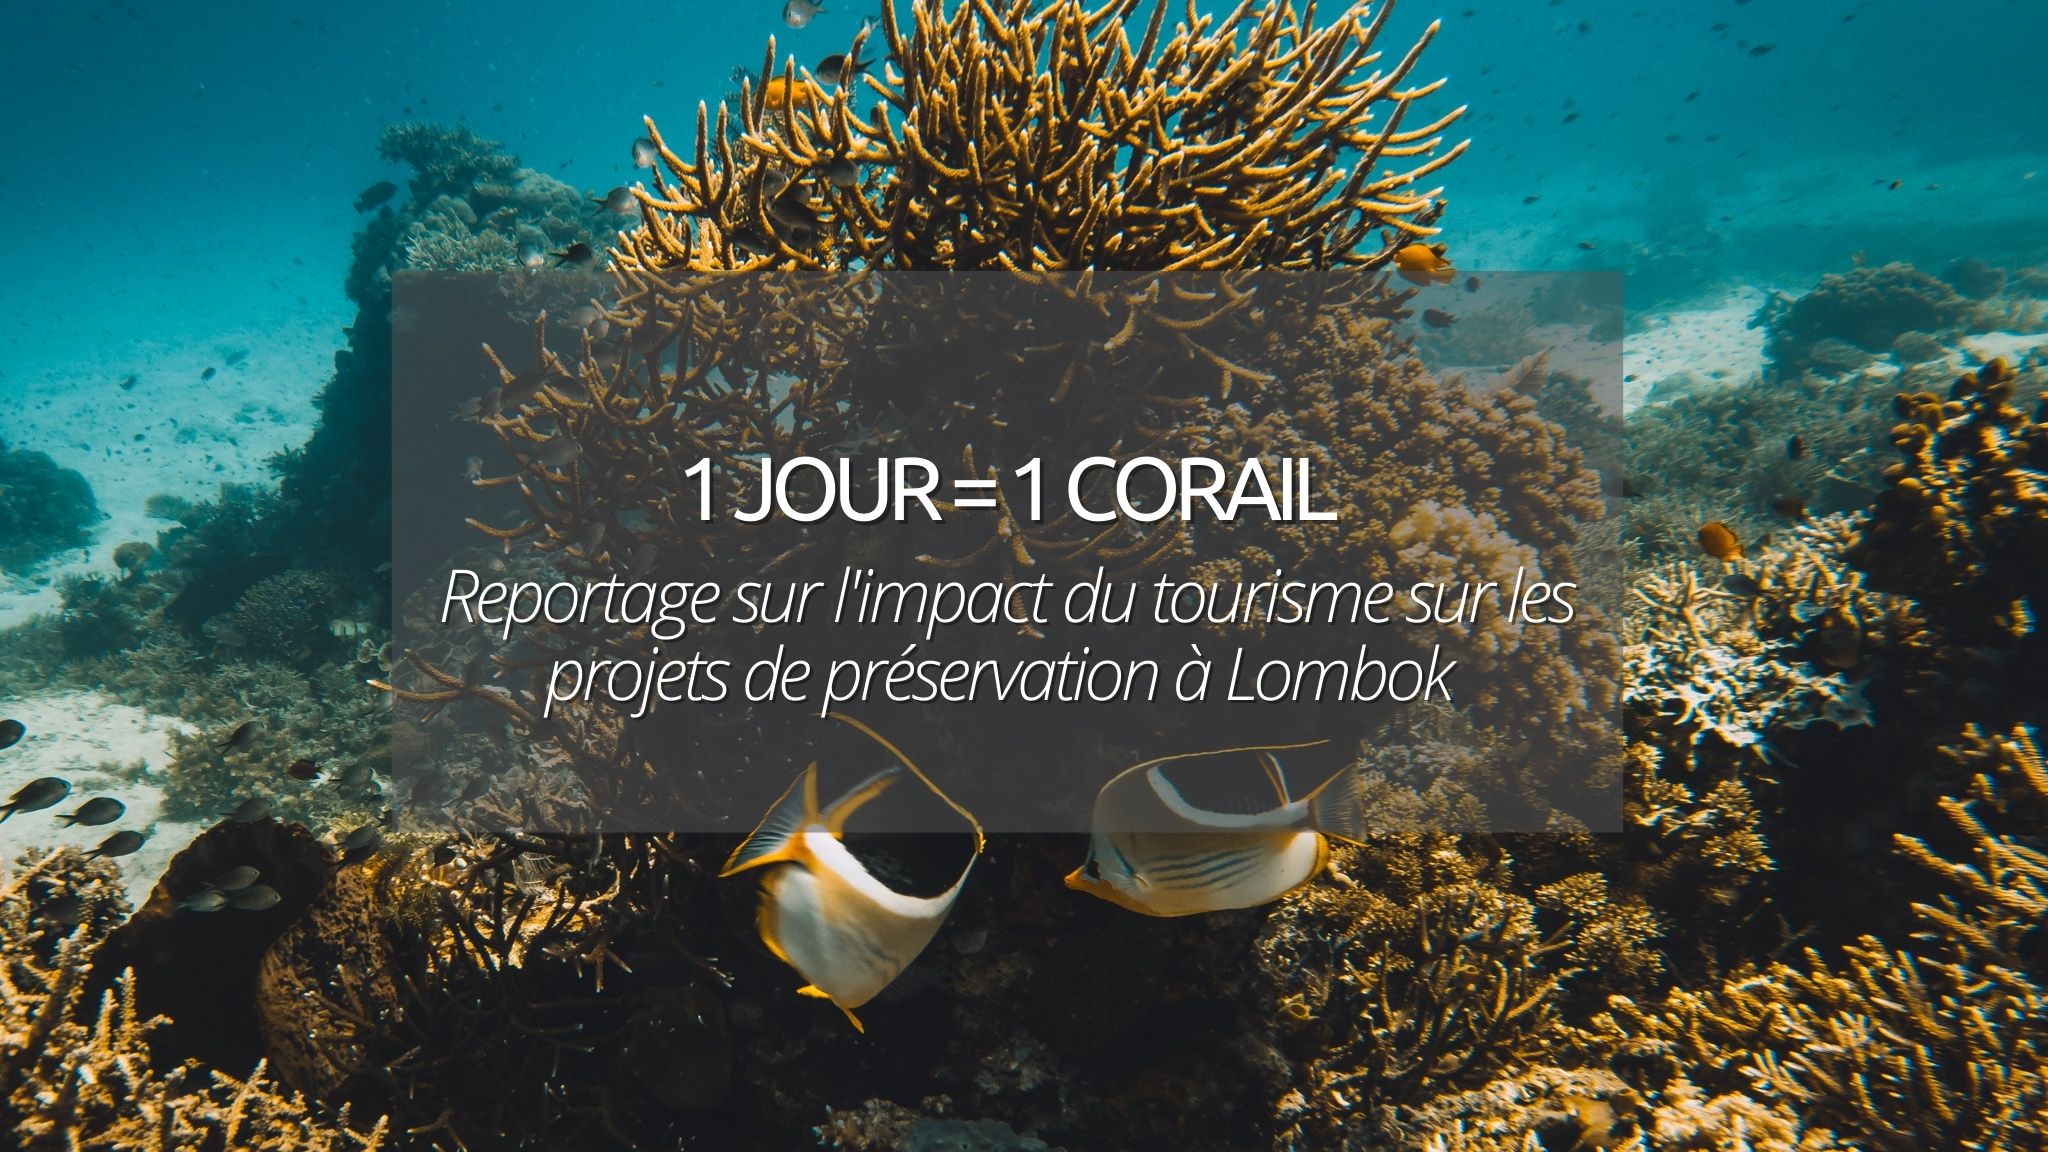 1 jour = 1 corail à Lombok en Indonésie : Impact du tourisme sur les projets de préservation et la vie des îles